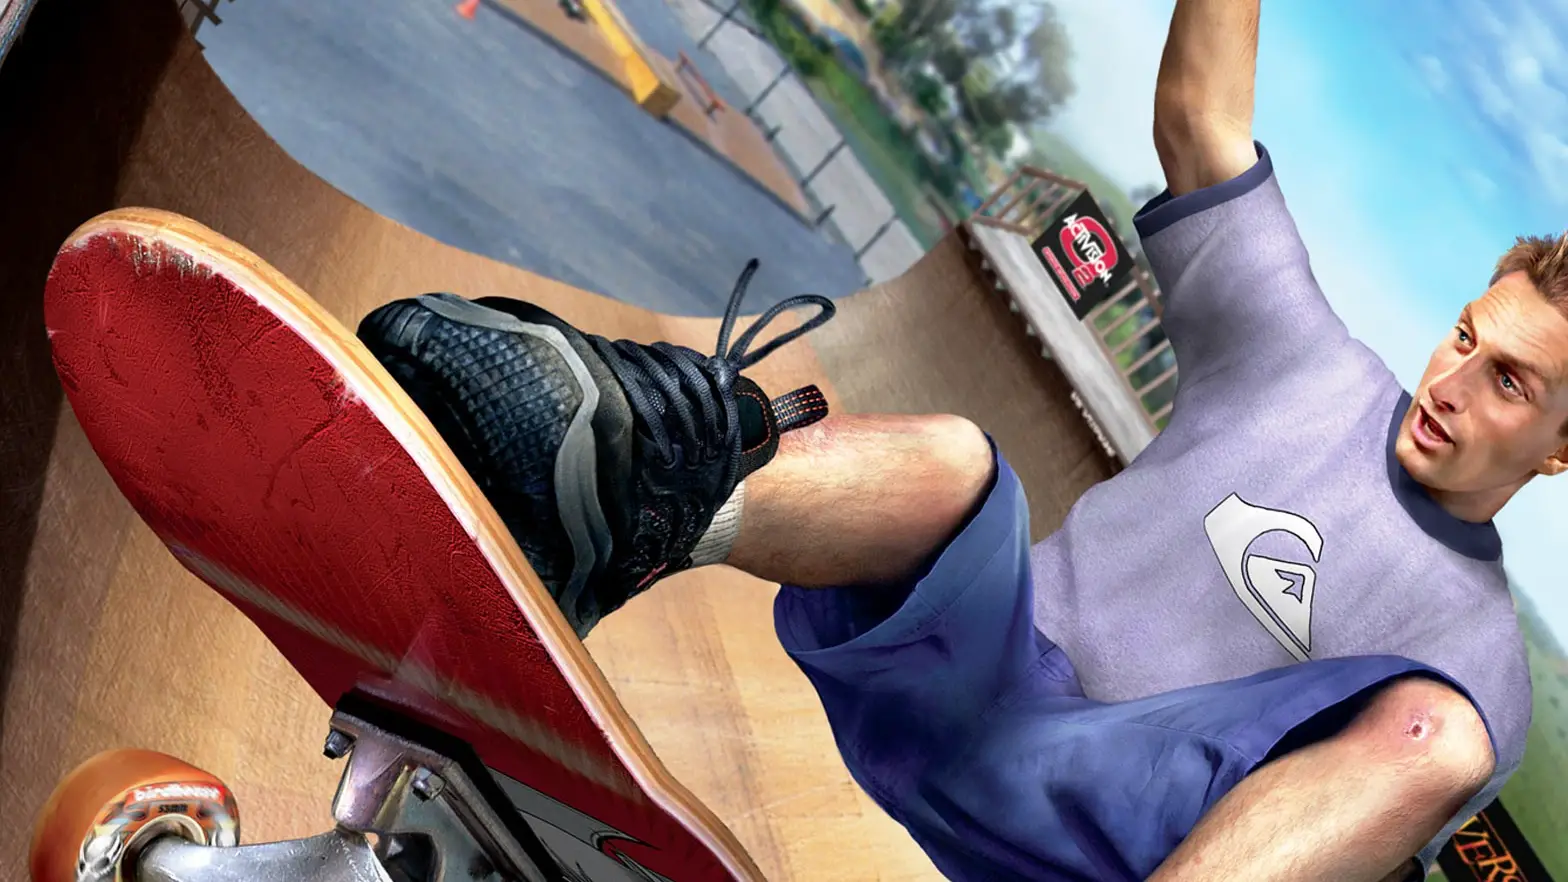 Tony Hawk déboulera sur PS4 en 2015.